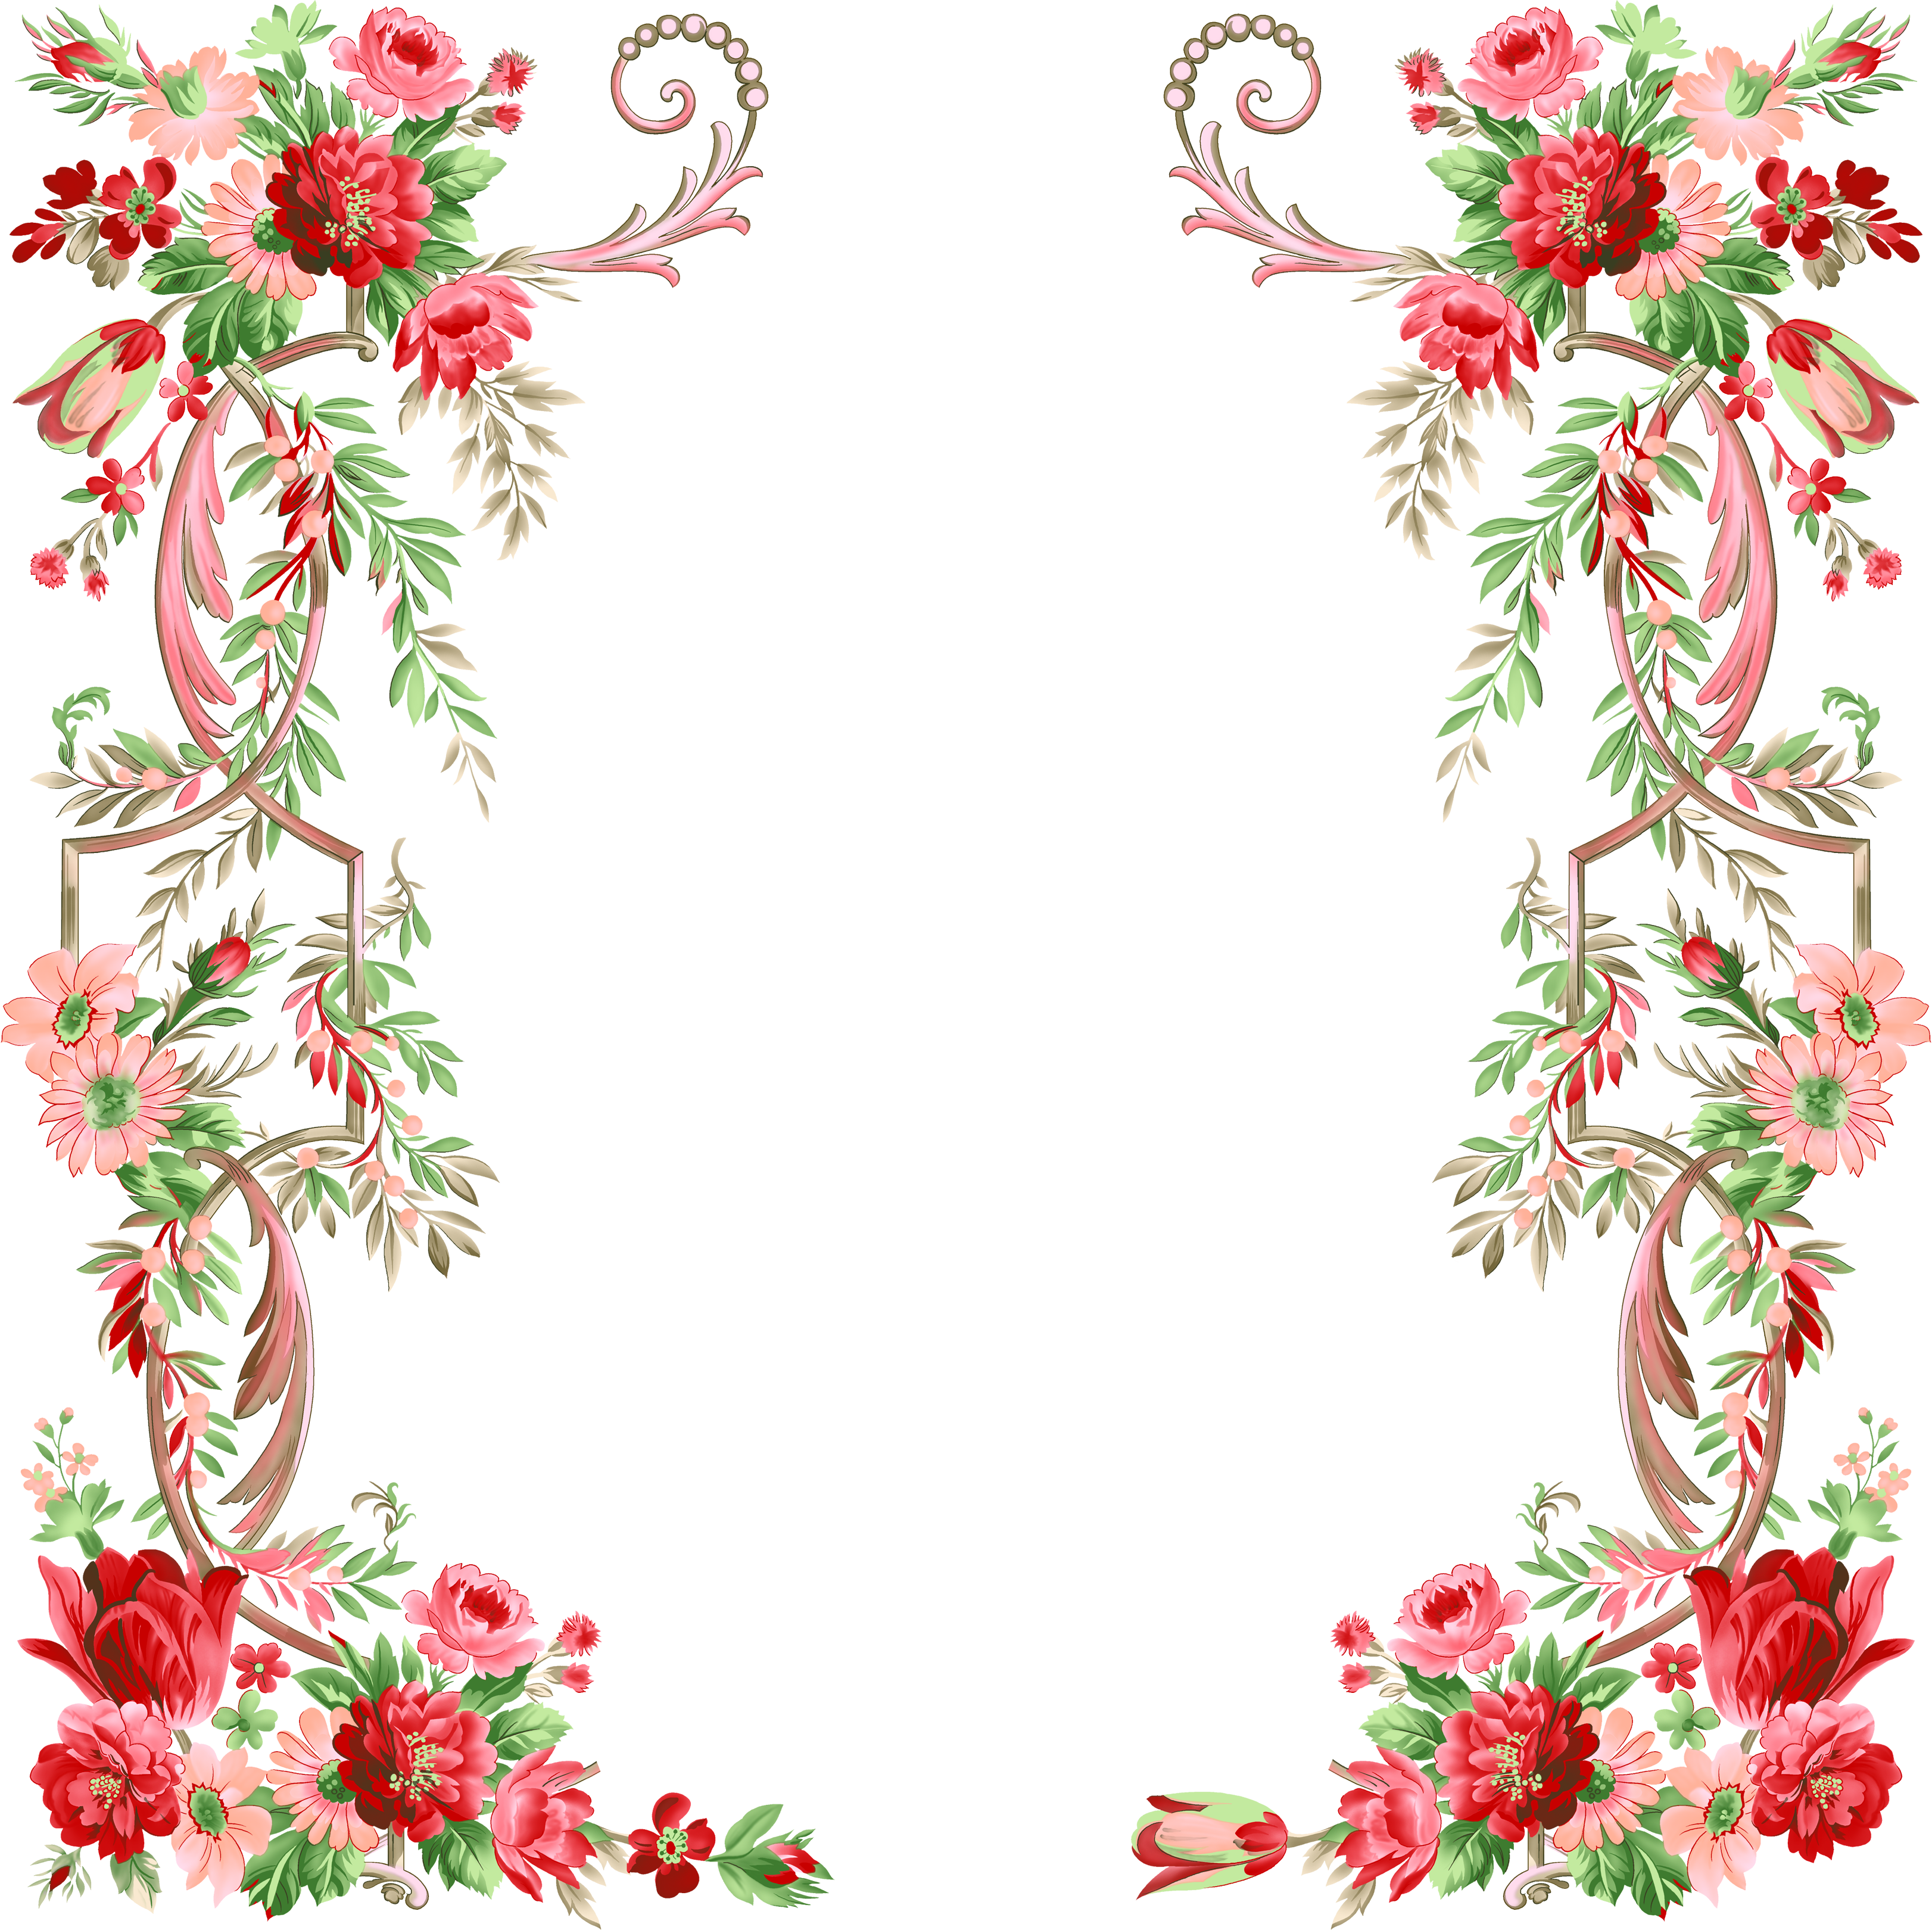 Flower Graphic design - Floral border design png download - 3244*3240